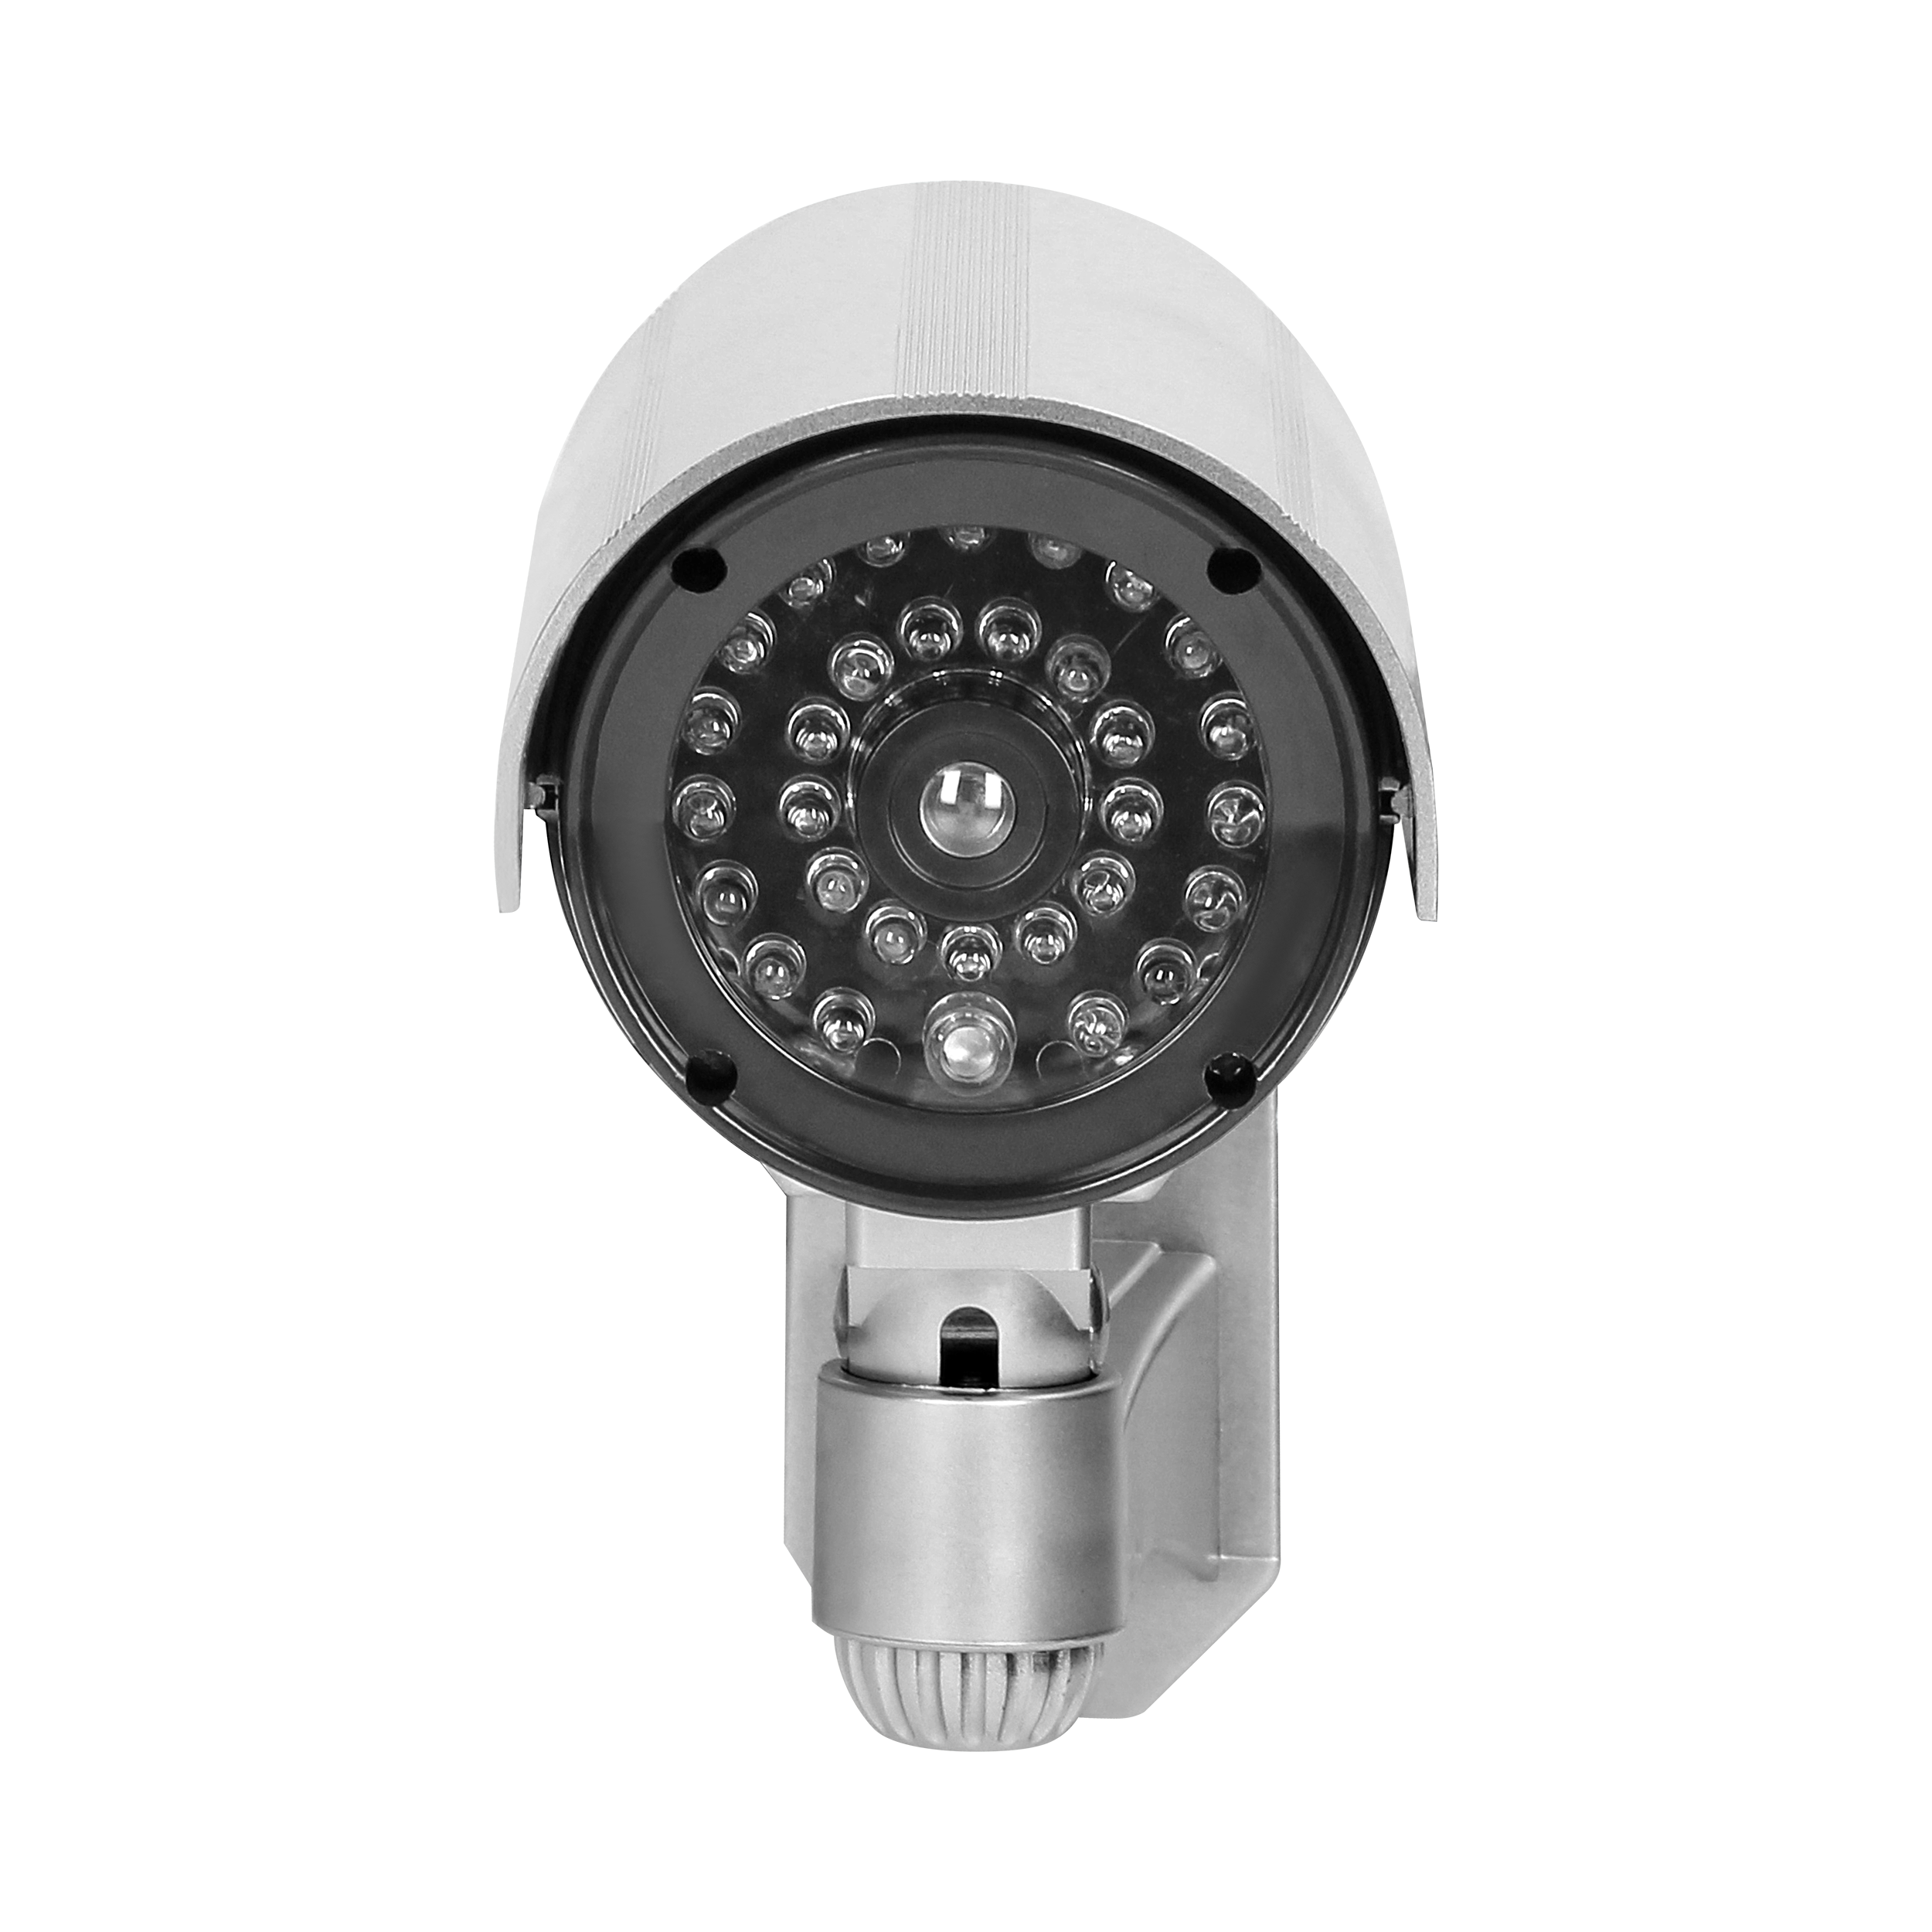 CCTV-Infrarot-Überwachungskamera-Attrappe, batteriebetrieben, Farbe: Silber